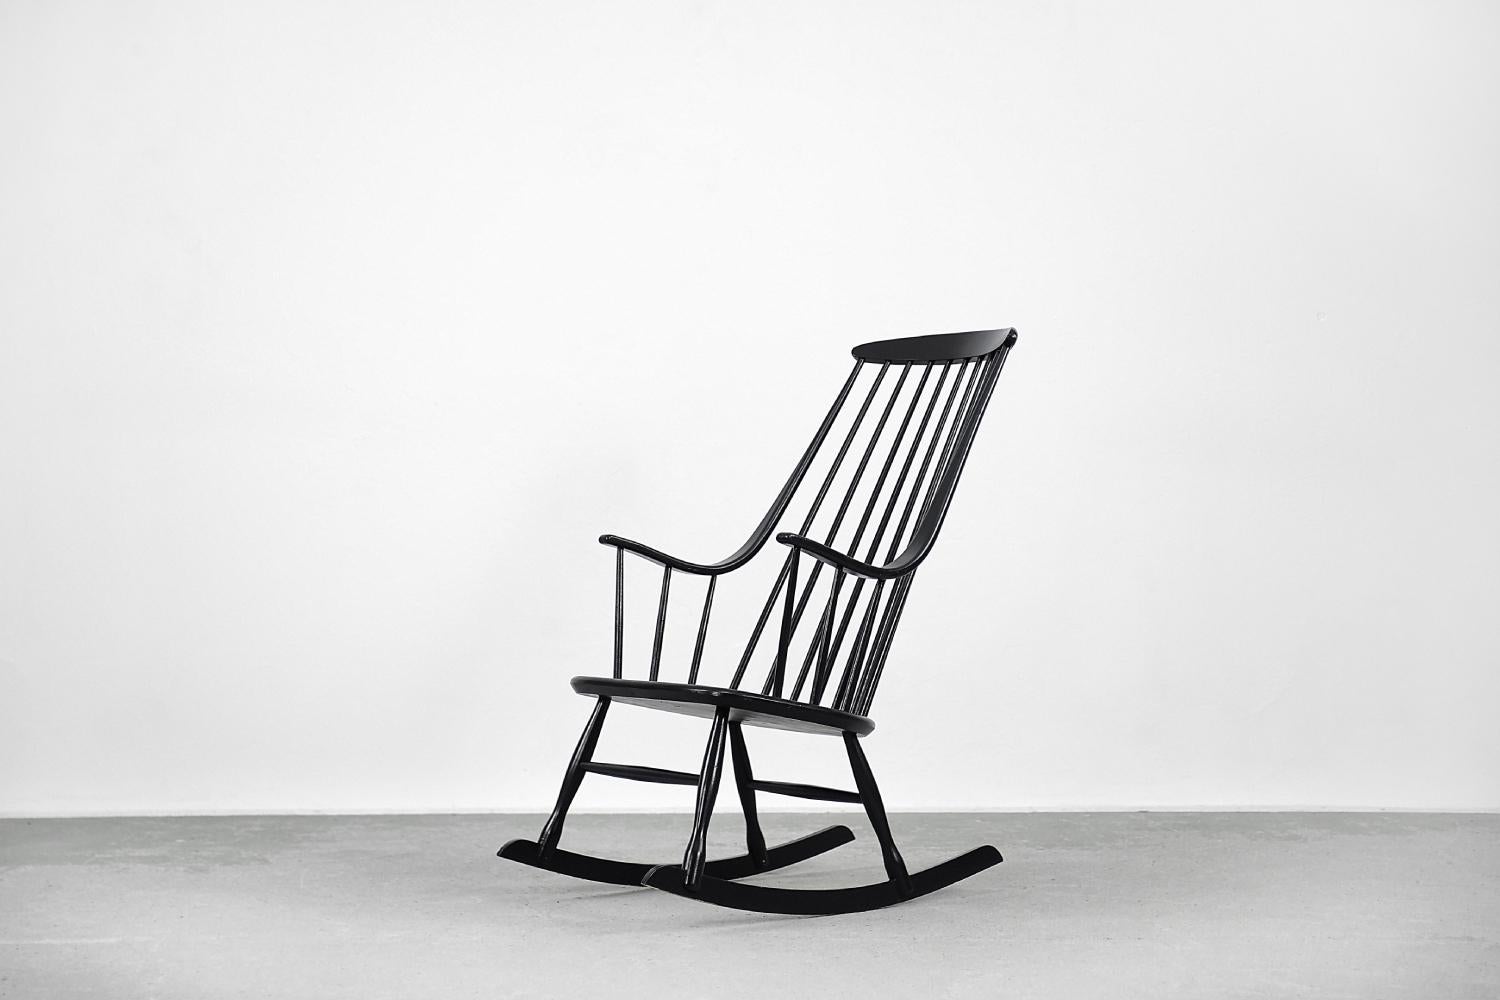 Der Schaukelstuhl Grandessa wurde in den 1960er Jahren von Lena Larsson für die schwedische Manufaktur Nesto entworfen. Der Sessel ist aus Buchenholz gefertigt. Er wurde mit schwarzem Lack überzogen. Die hohe Rückenlehne geht nahtlos in die